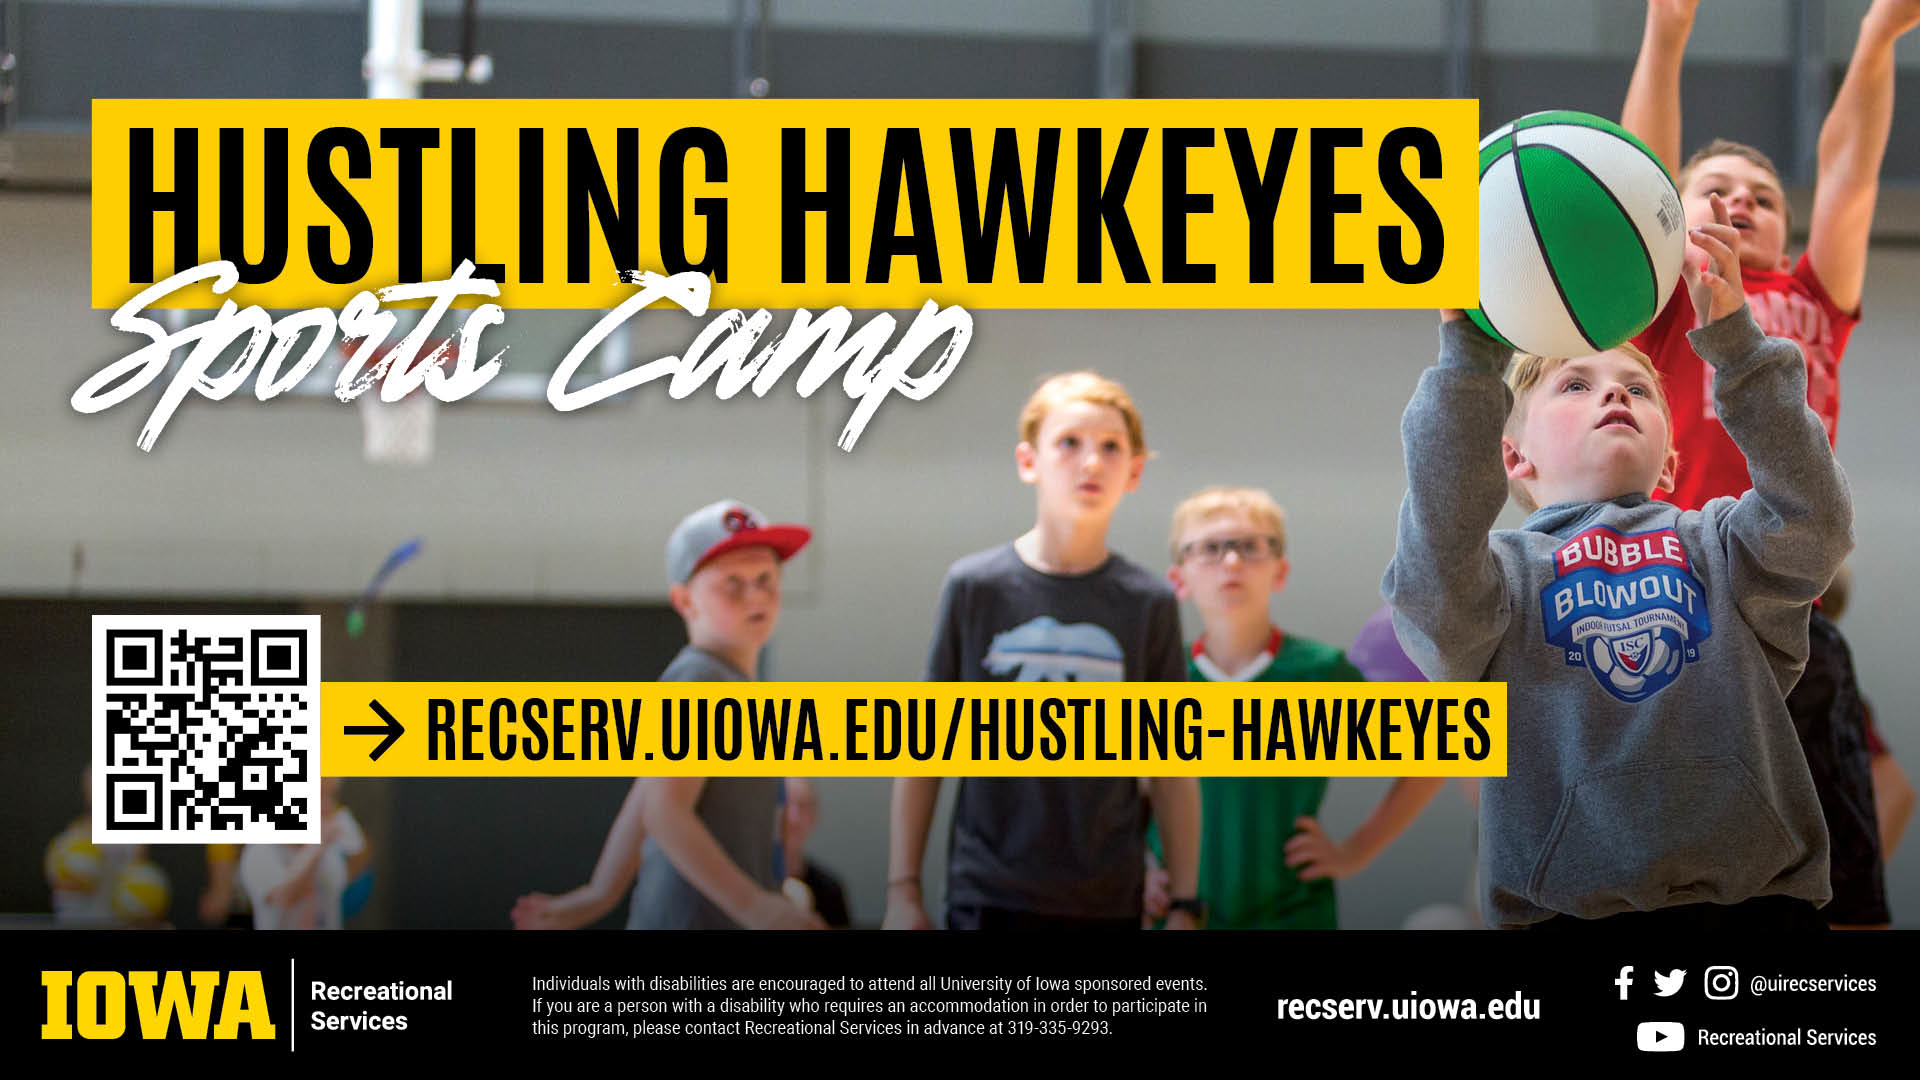 recserv.uiowa.edu/hustling-hawkeyes